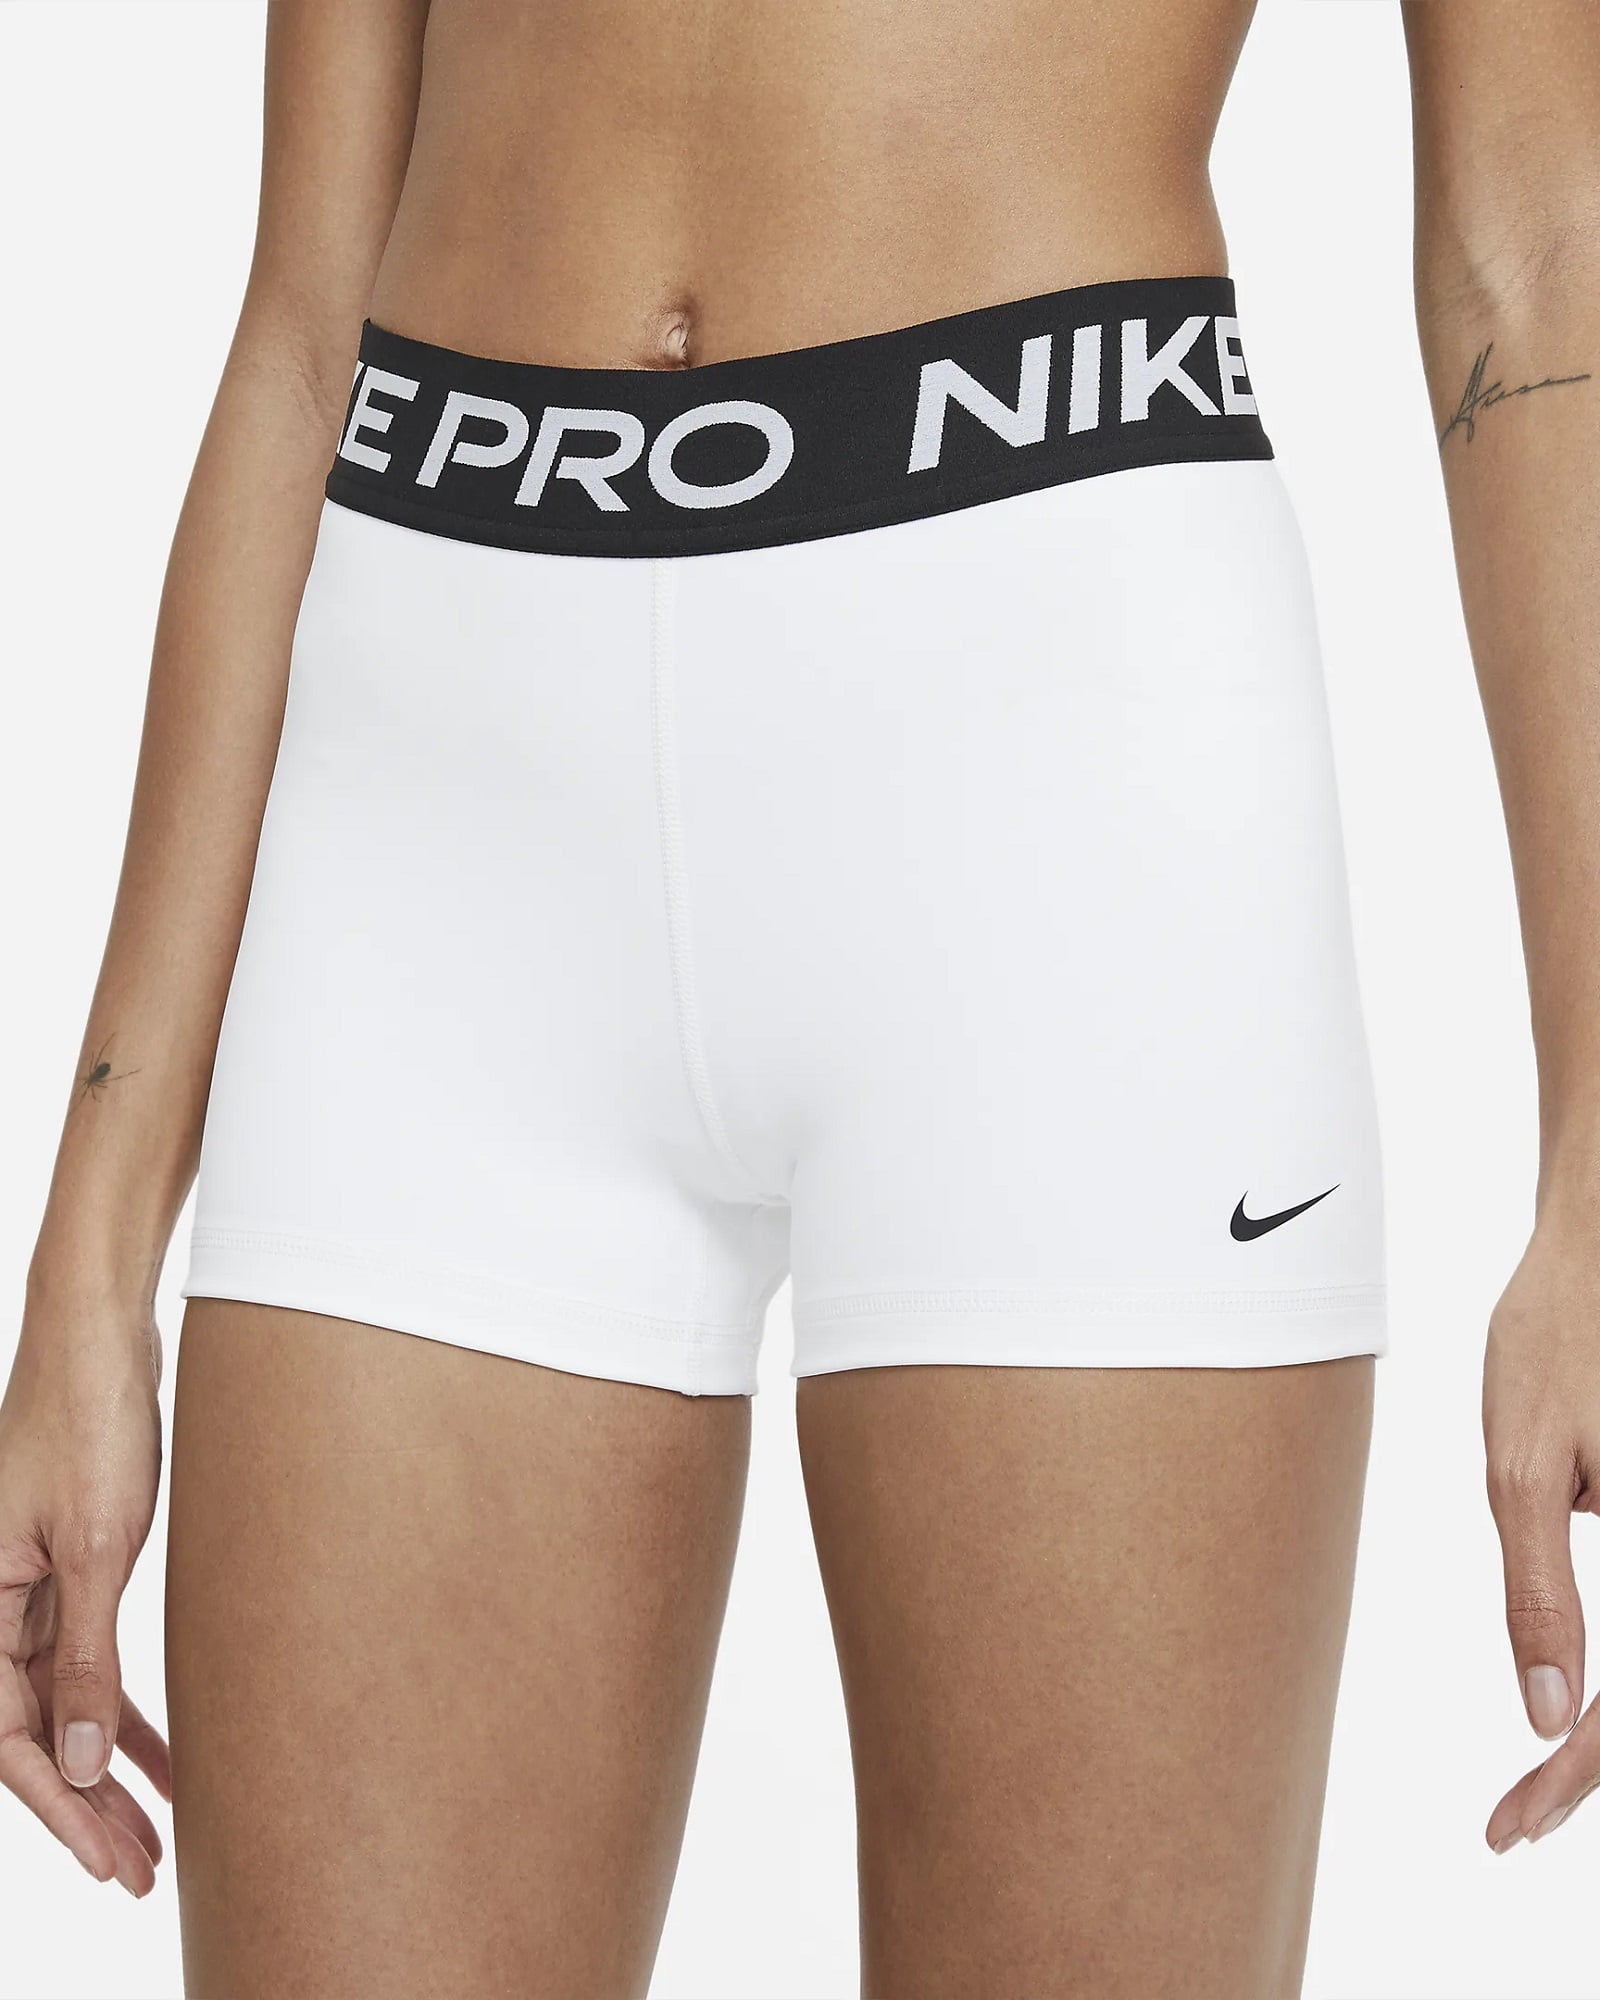 Nike 3" Shorts (White/Black/Black, Large) - Walmart.com